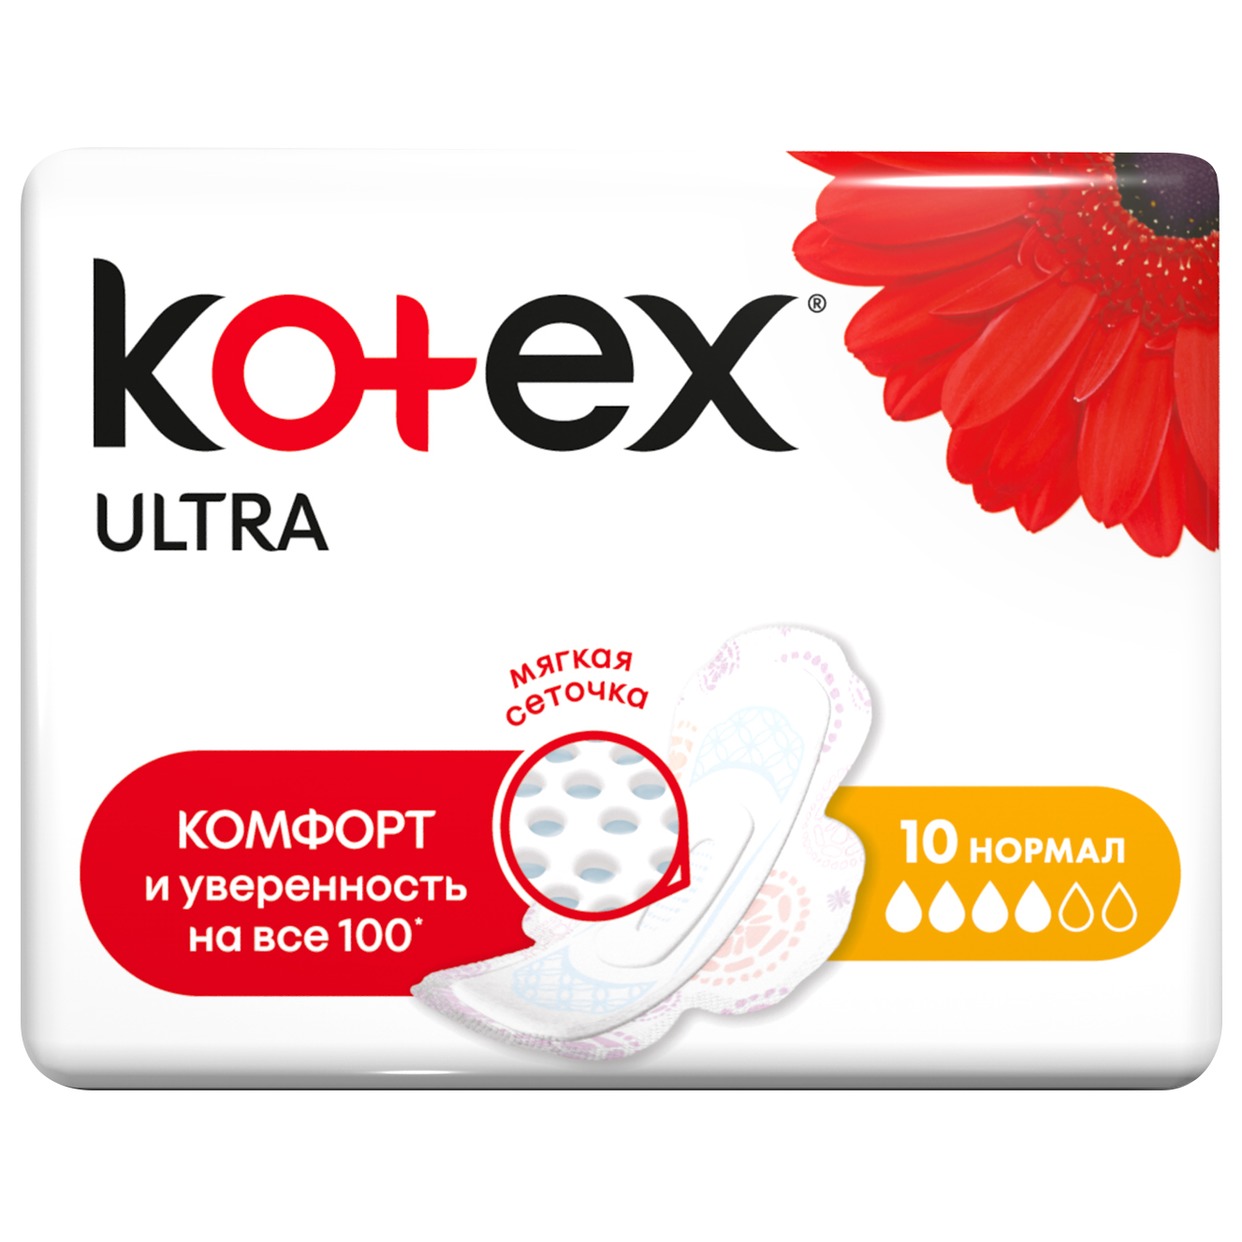 Прокладки Kotex Ultra Нормал с крылышками 10 шт. по акции в Пятерочке